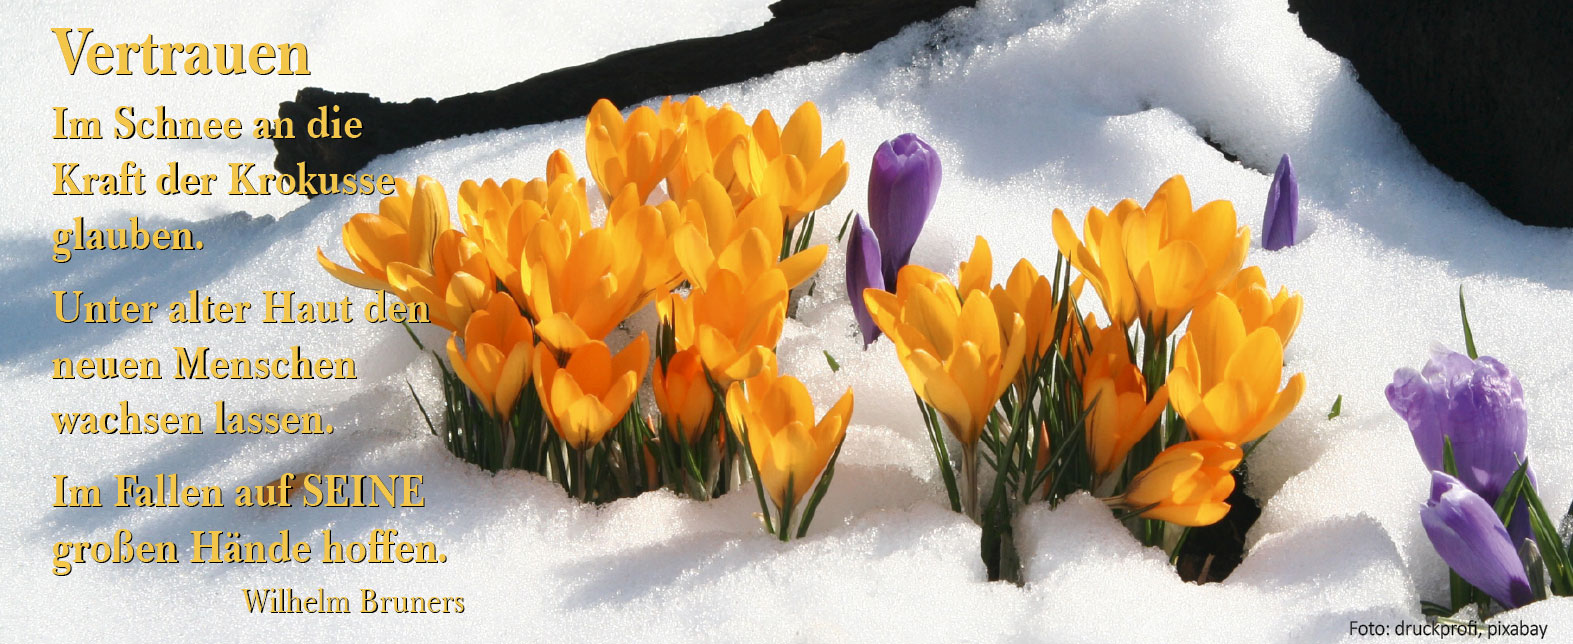 VERTRAUEN (Foto: Krokus im Schnee, druckprofi, pixabay)